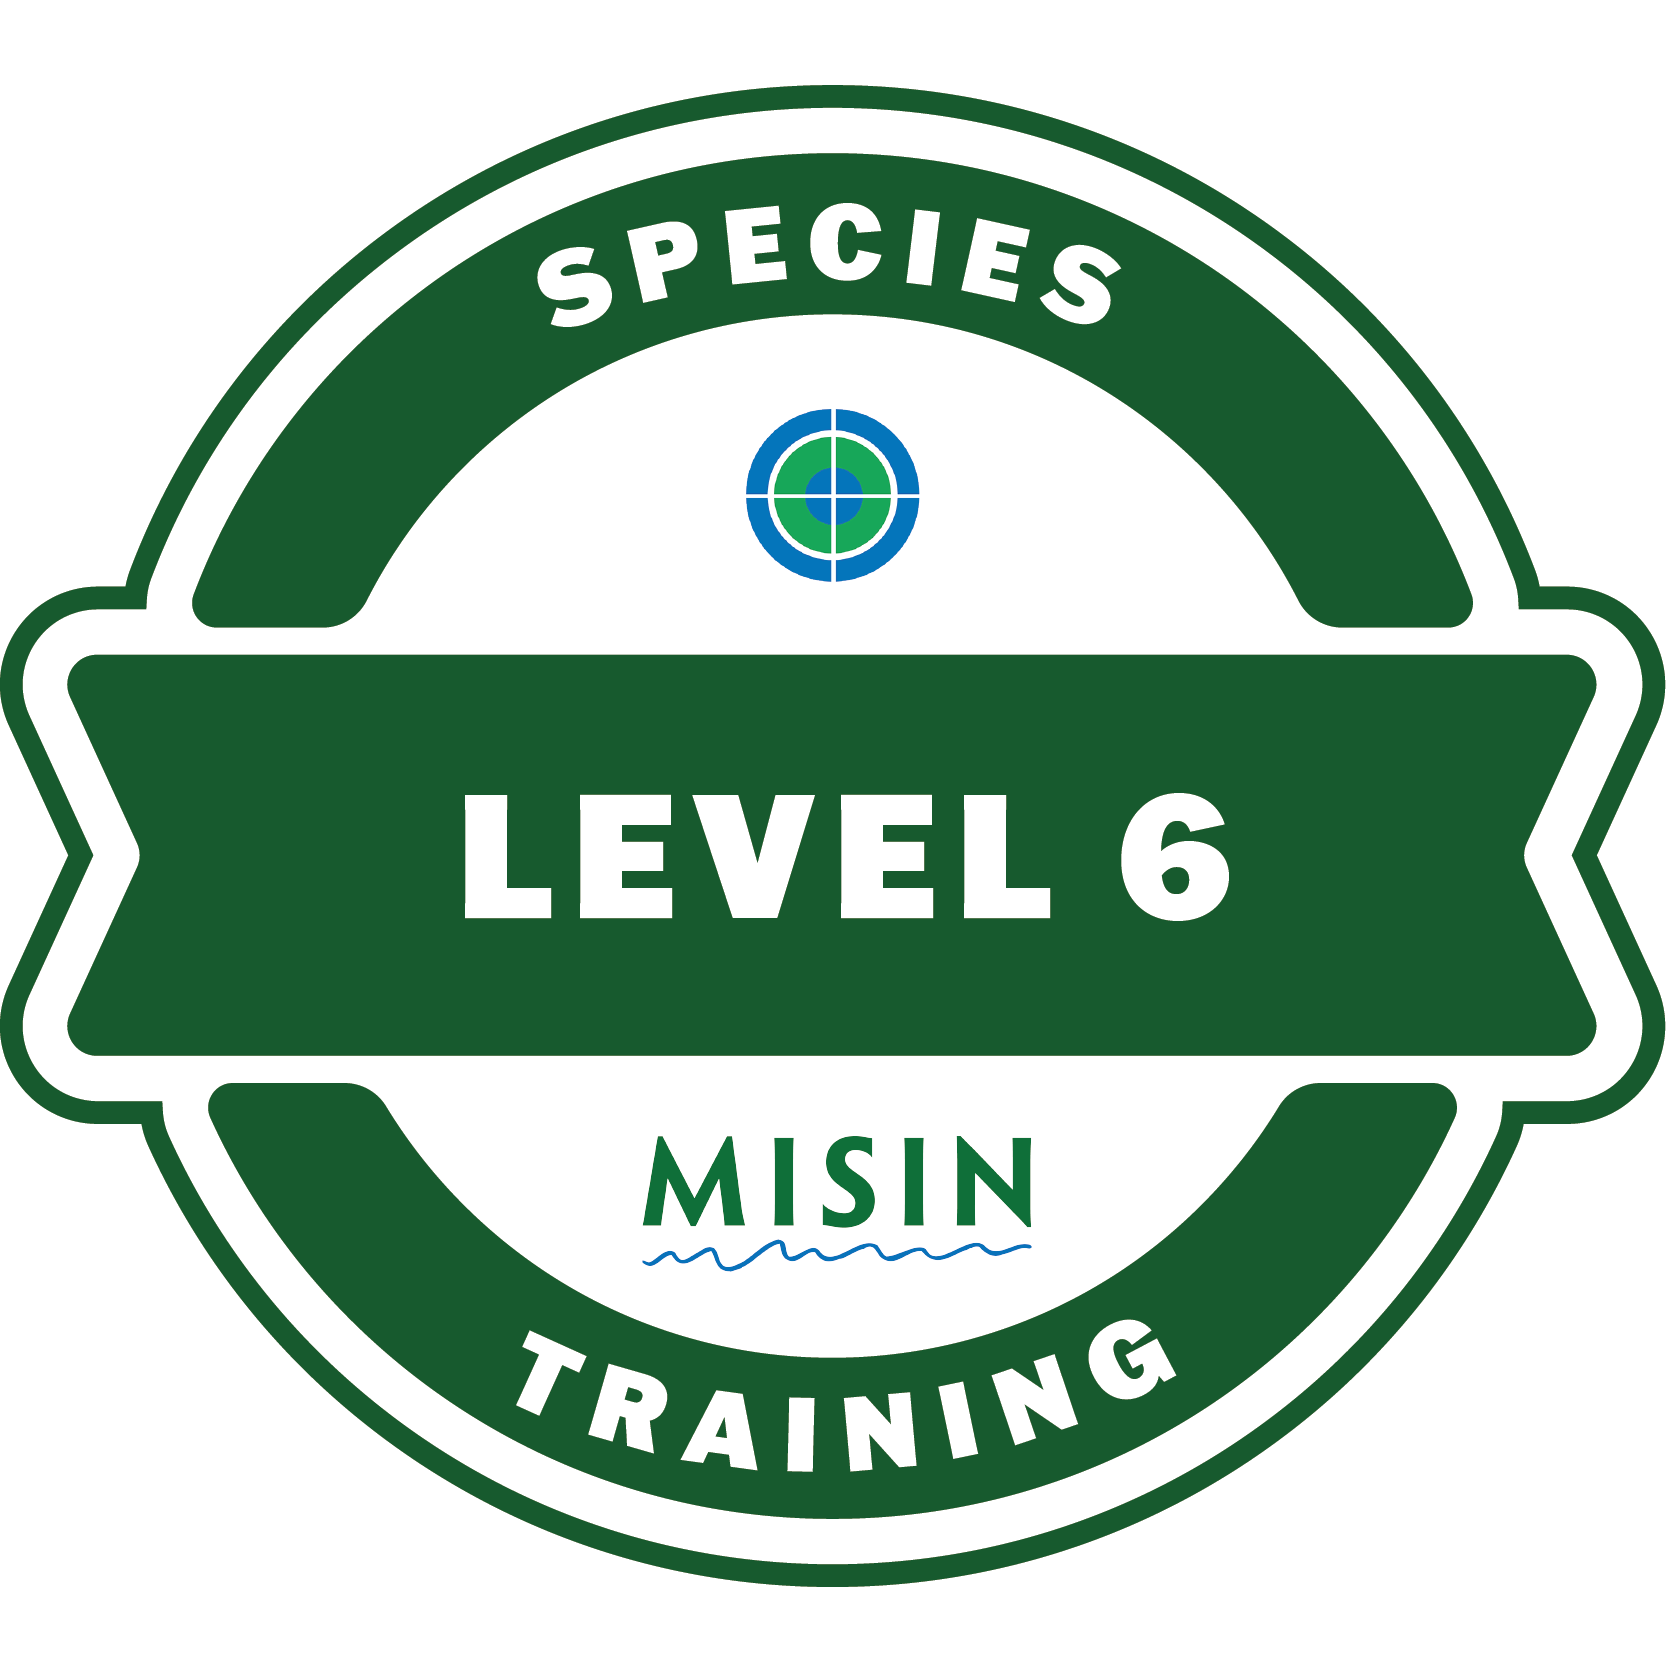 Species Training Level 6